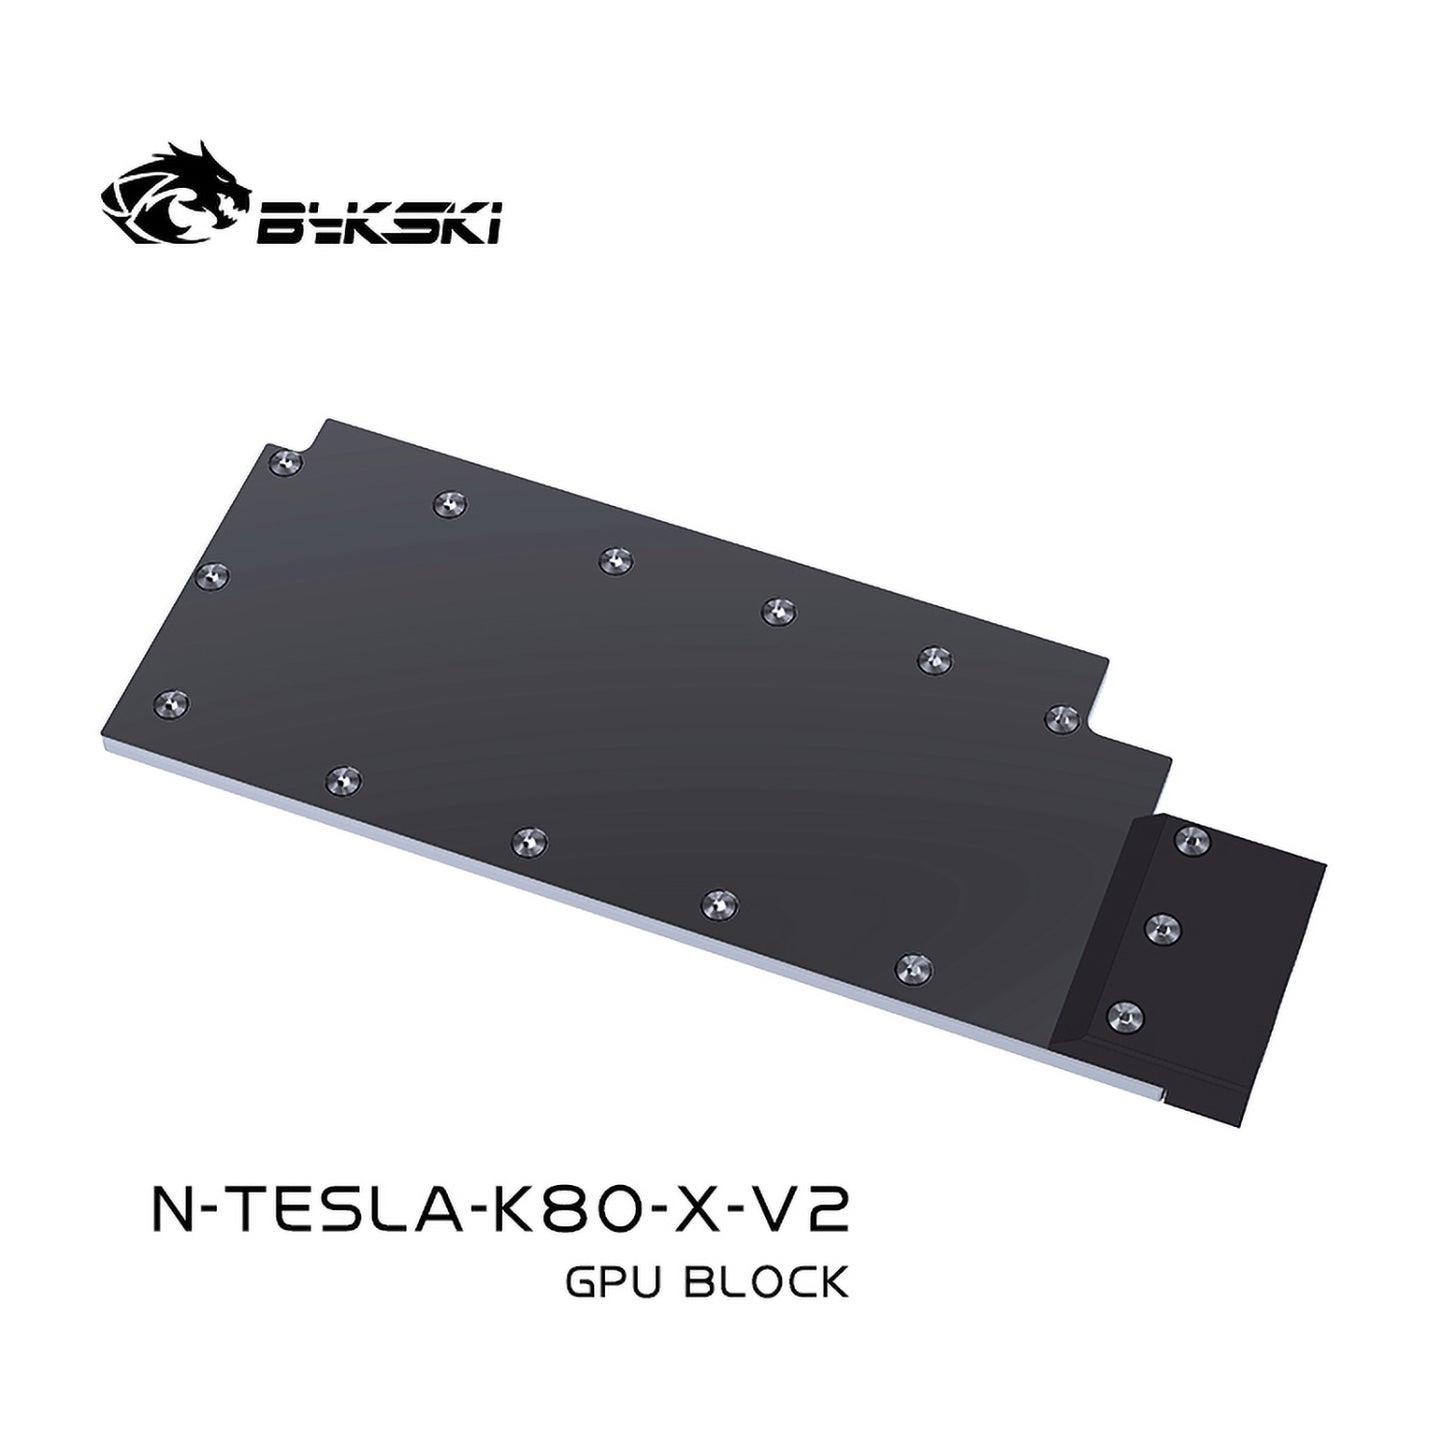 Bloc GPU Bykski pour Leadtek Tesla K80M, matériau POM à haute résistance à la chaleur, bloc de radiateur de refroidissement par eau GPU à couverture complète N-TESLA-K80-X-V2 